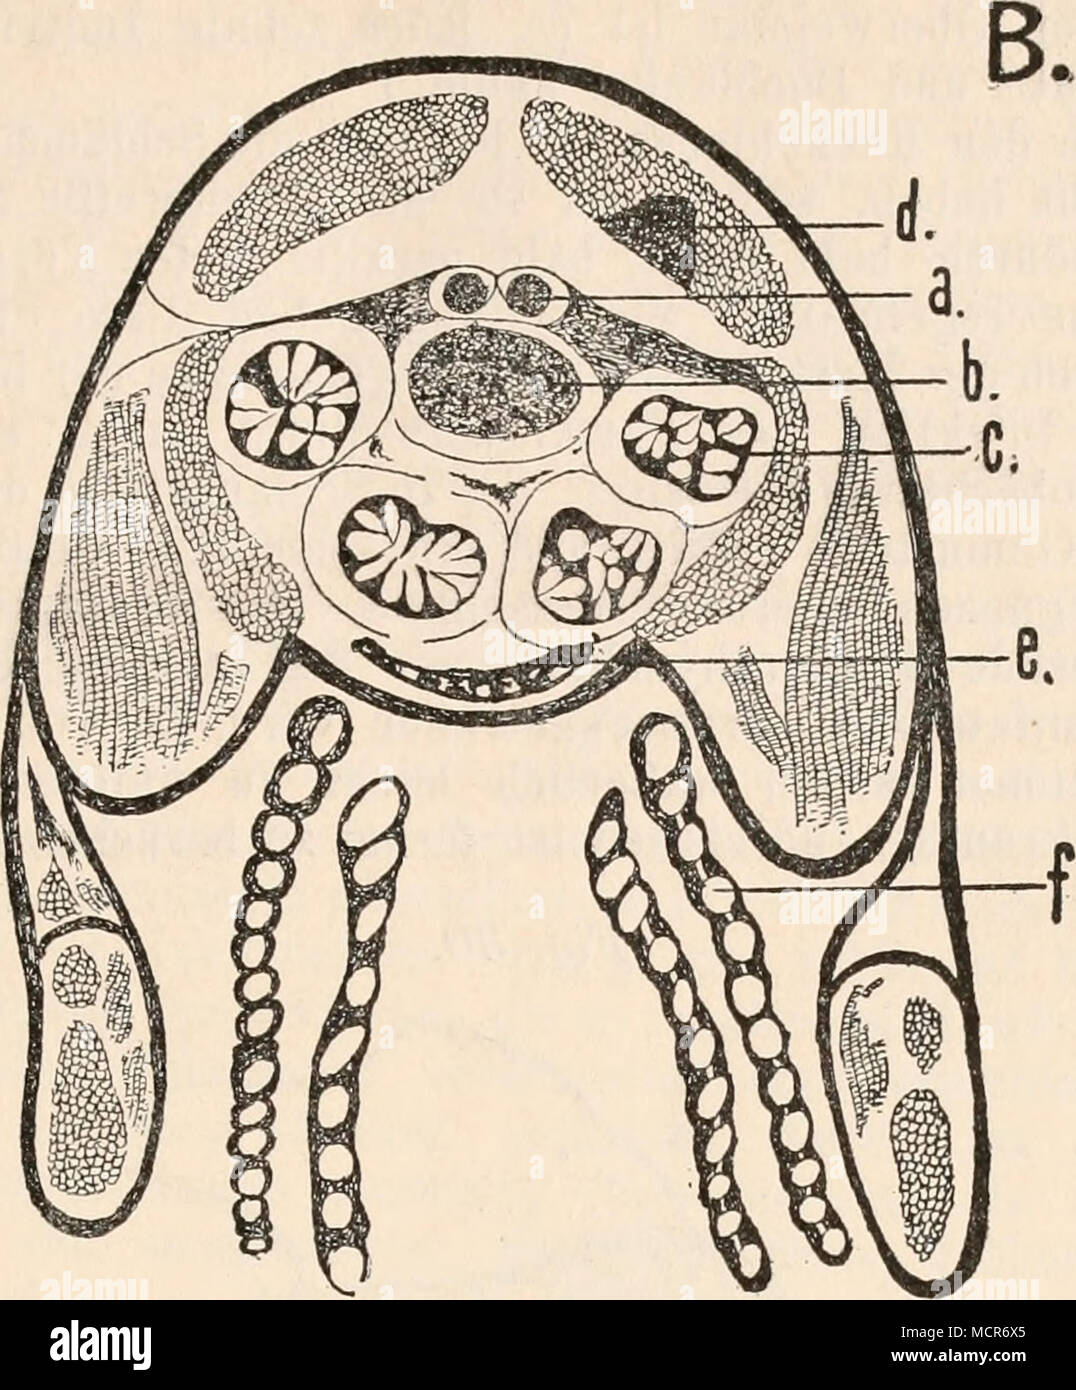 . Glugea Mülleri nov. spec. aus Gammarus pulex. A. Prontalschnitt durch den Rücken, a. Sohlundganglion, b. Darm. c. Leberschläuche, d. Muskelzell- infektion, e. BauchganglioD. f. Kiemen. B. Querschnitt durch den Thorax. Vergrößerung 50/1. Astacus fluviatilis beherbergt die Thelohania Contjeani, deren Sporen 3—4 mram lang sind, mit einem 15—20 mmm langen Polfaden. Palaemon rectirostris, serratus und varians haben die Thelohania octospora, mit gleich großen Sporen. Cragnon vulgaris hat die Thelohania Giardi, mit nur 2—3 mmm großen Sporen. Gammarus pulex hat die Glugea Mülleri, deren Sporen 3—4 m Stock Photo